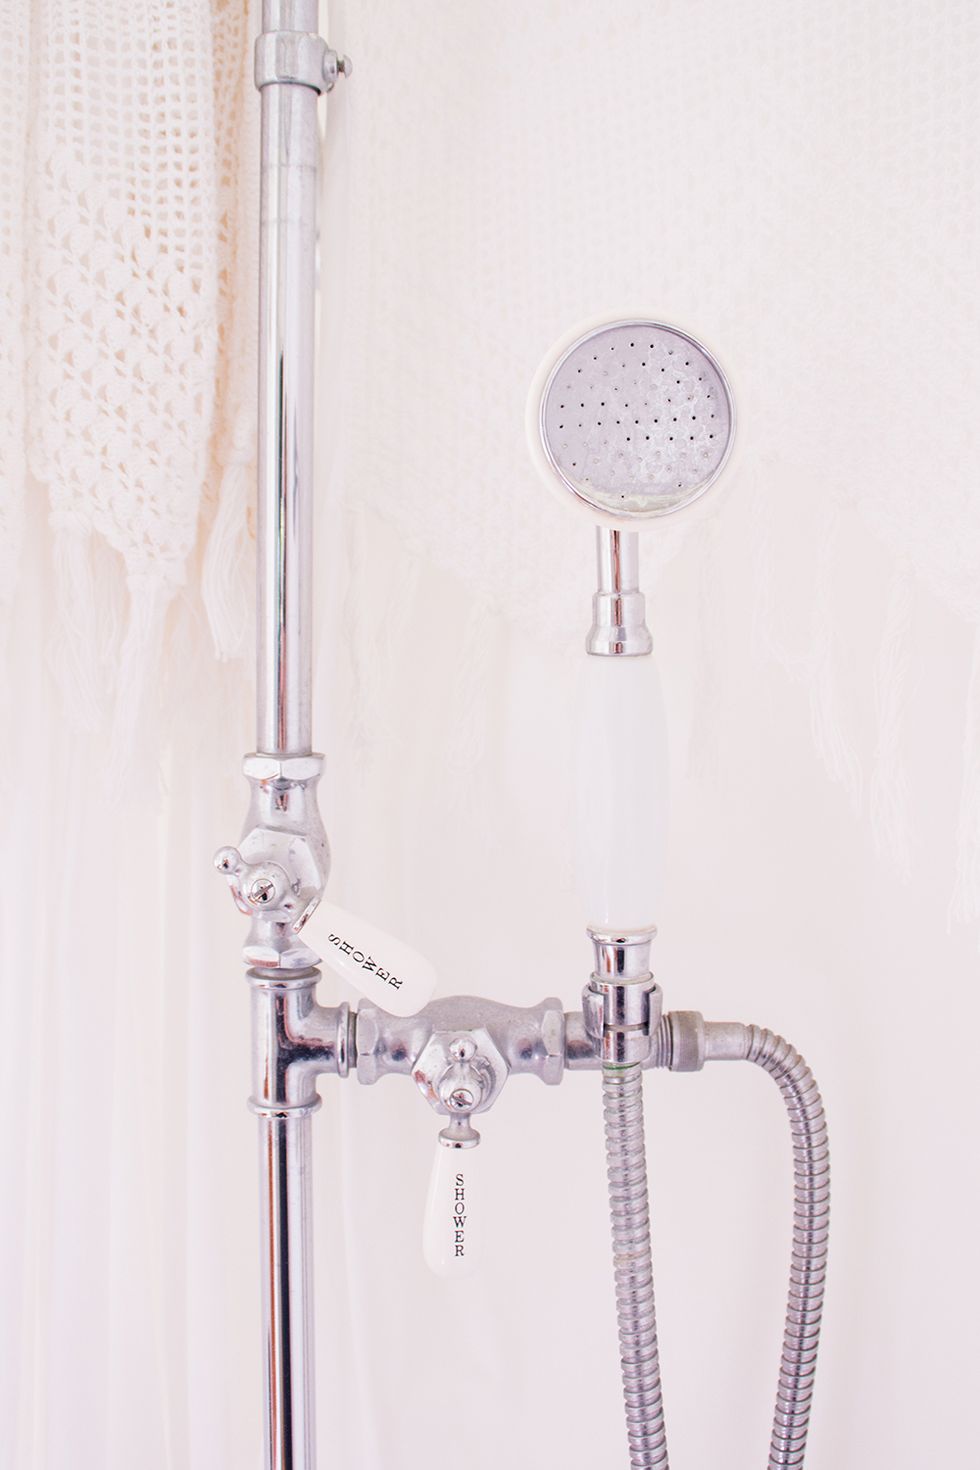 Shower, Plumbing fixture, Shower head, Plumbing, Room, Tap, Shower panel, Metal, 